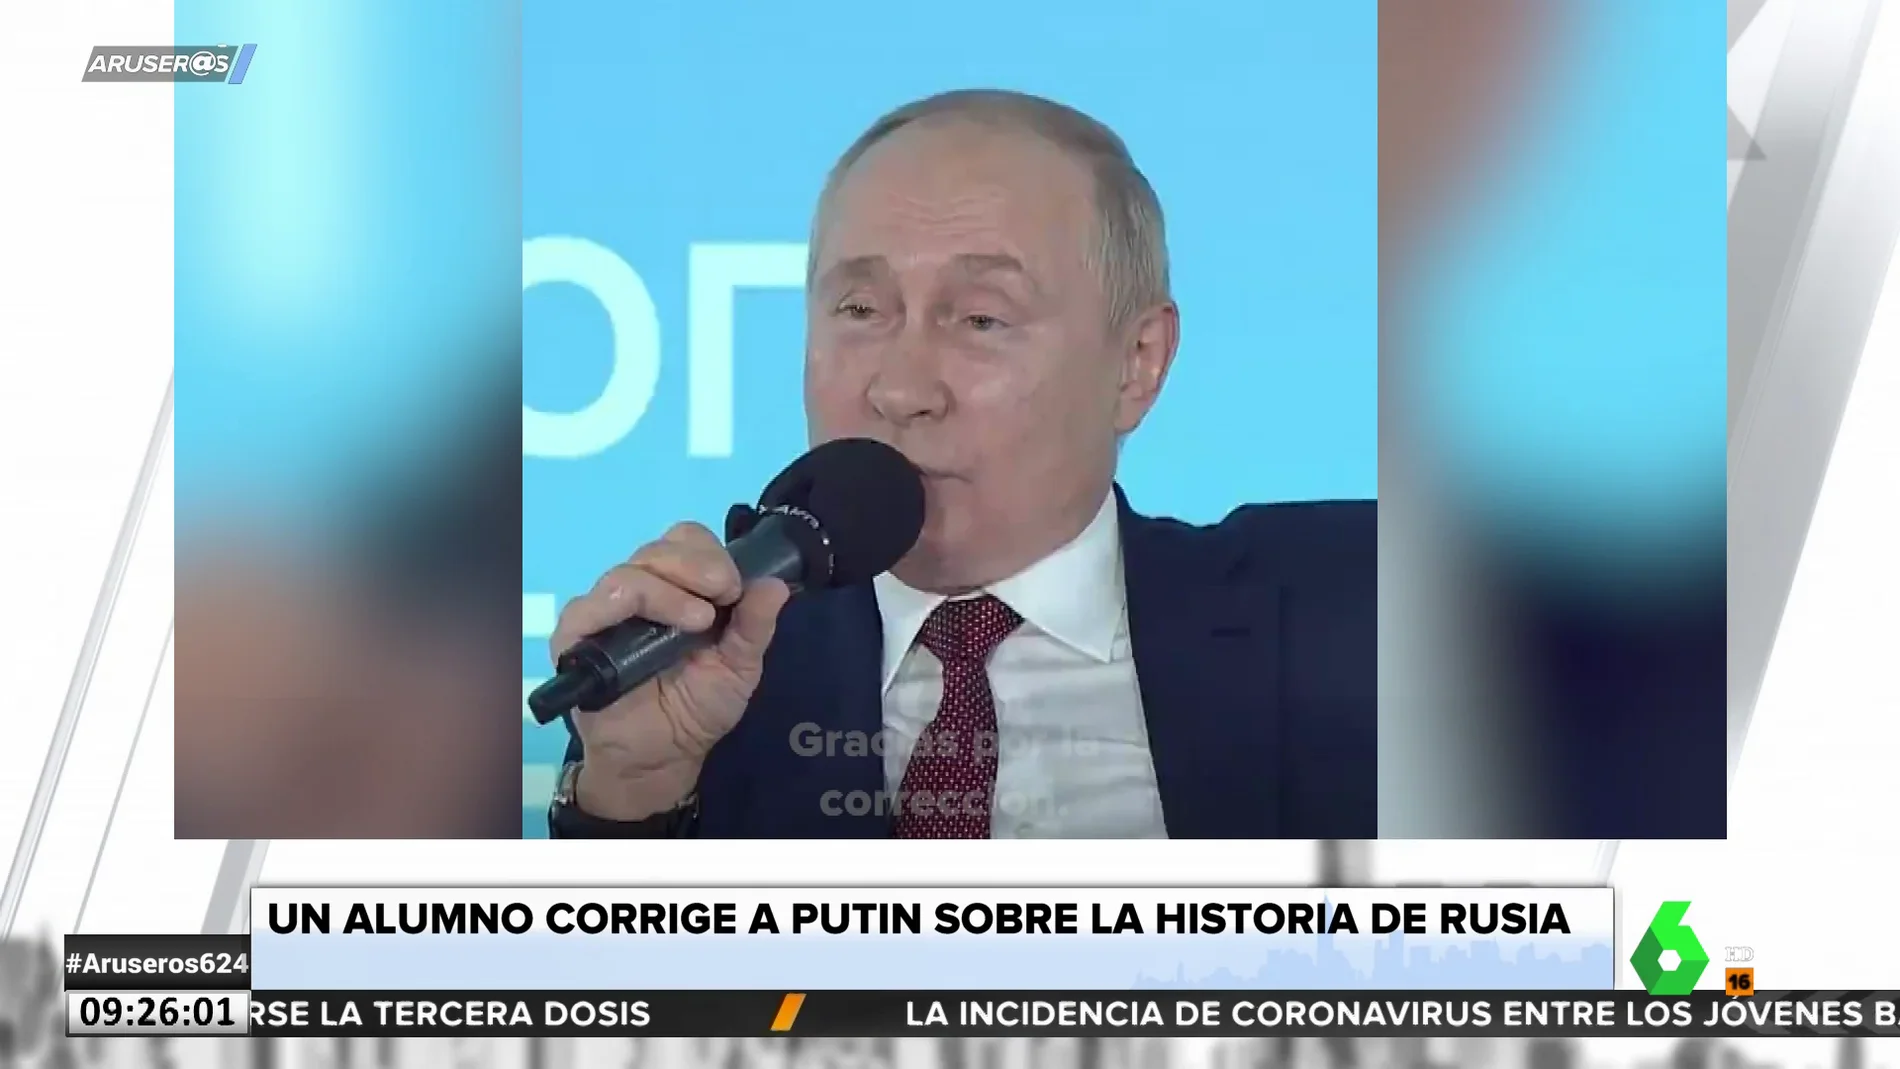 La reacción de Putin cuando un niño le corrige ante las cámaras